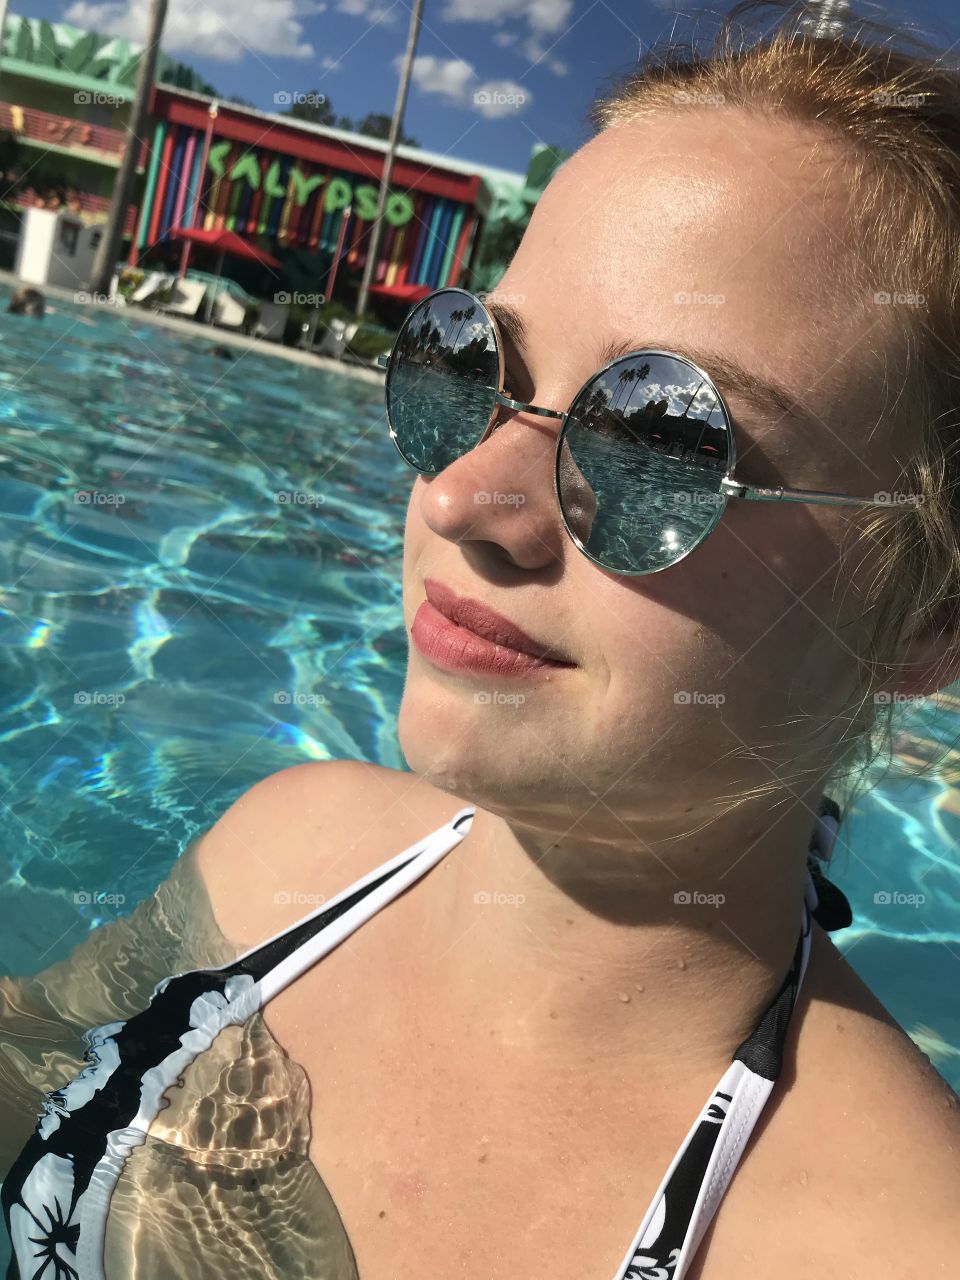 June fun in the pool